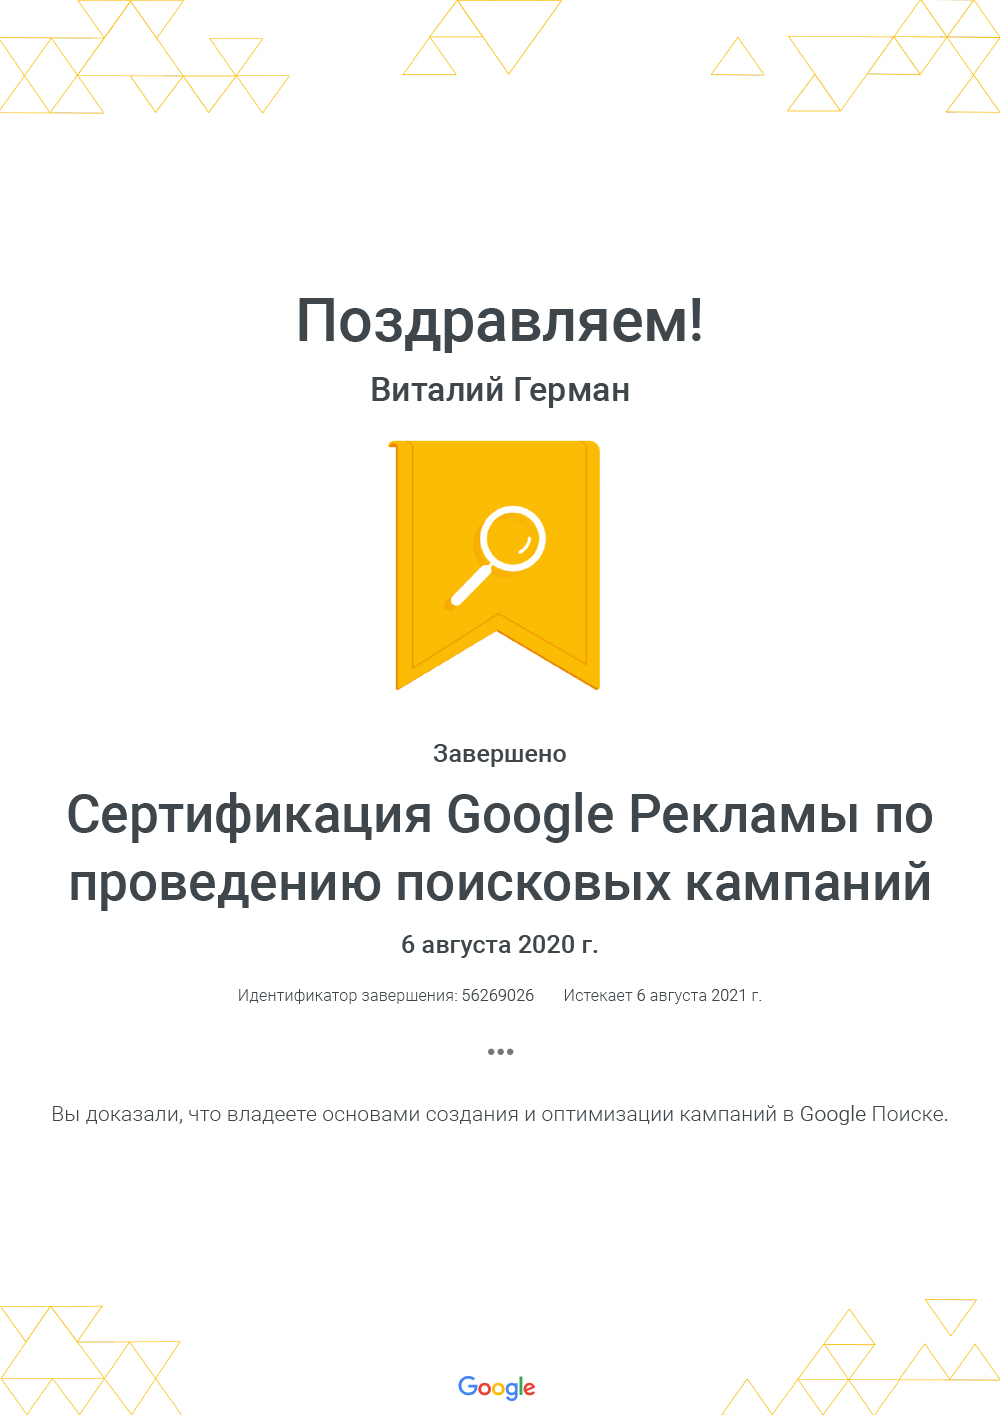 Сертификация Google Реклама поисковая реклама 2020